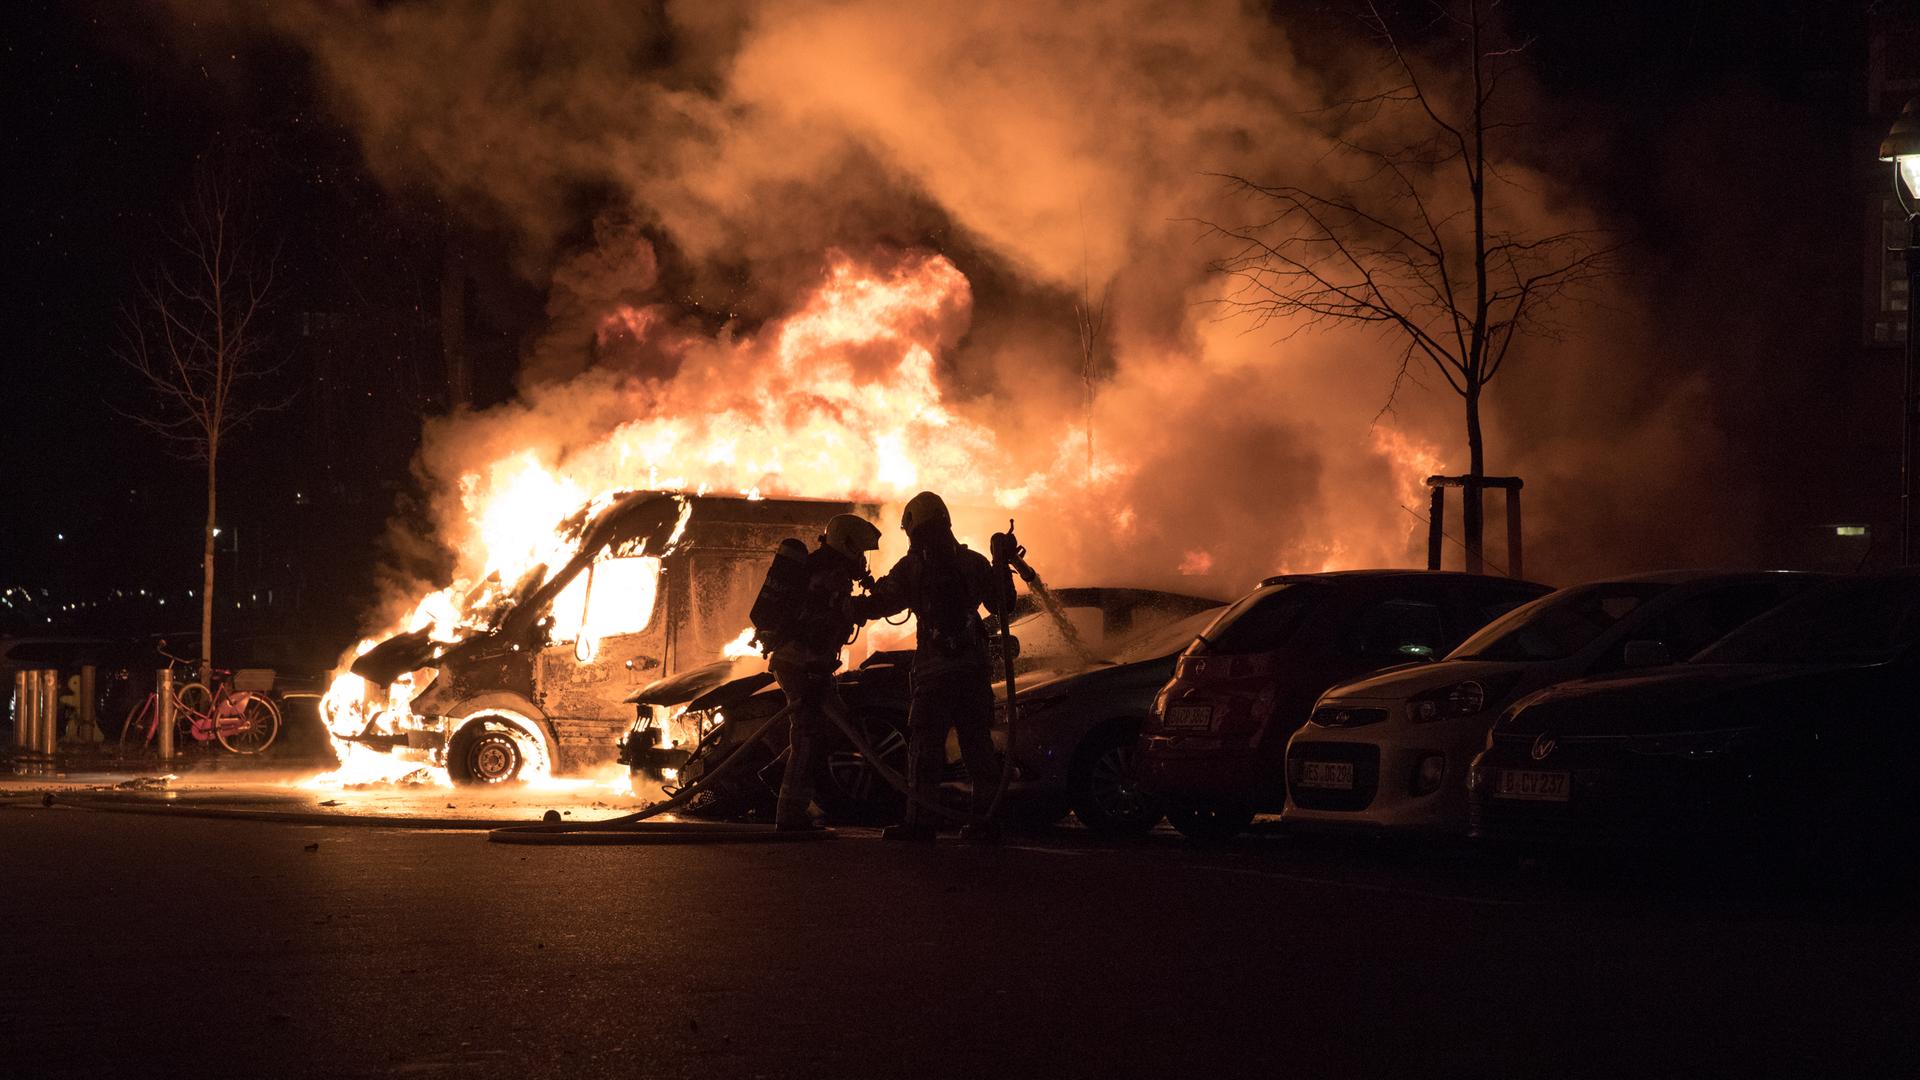 Feuerwehrleute versuchen ein brennendes Auto zu löschen. Es ist Nacht und alles ist sehr dunkel, nur das Feuer sticht hervor.